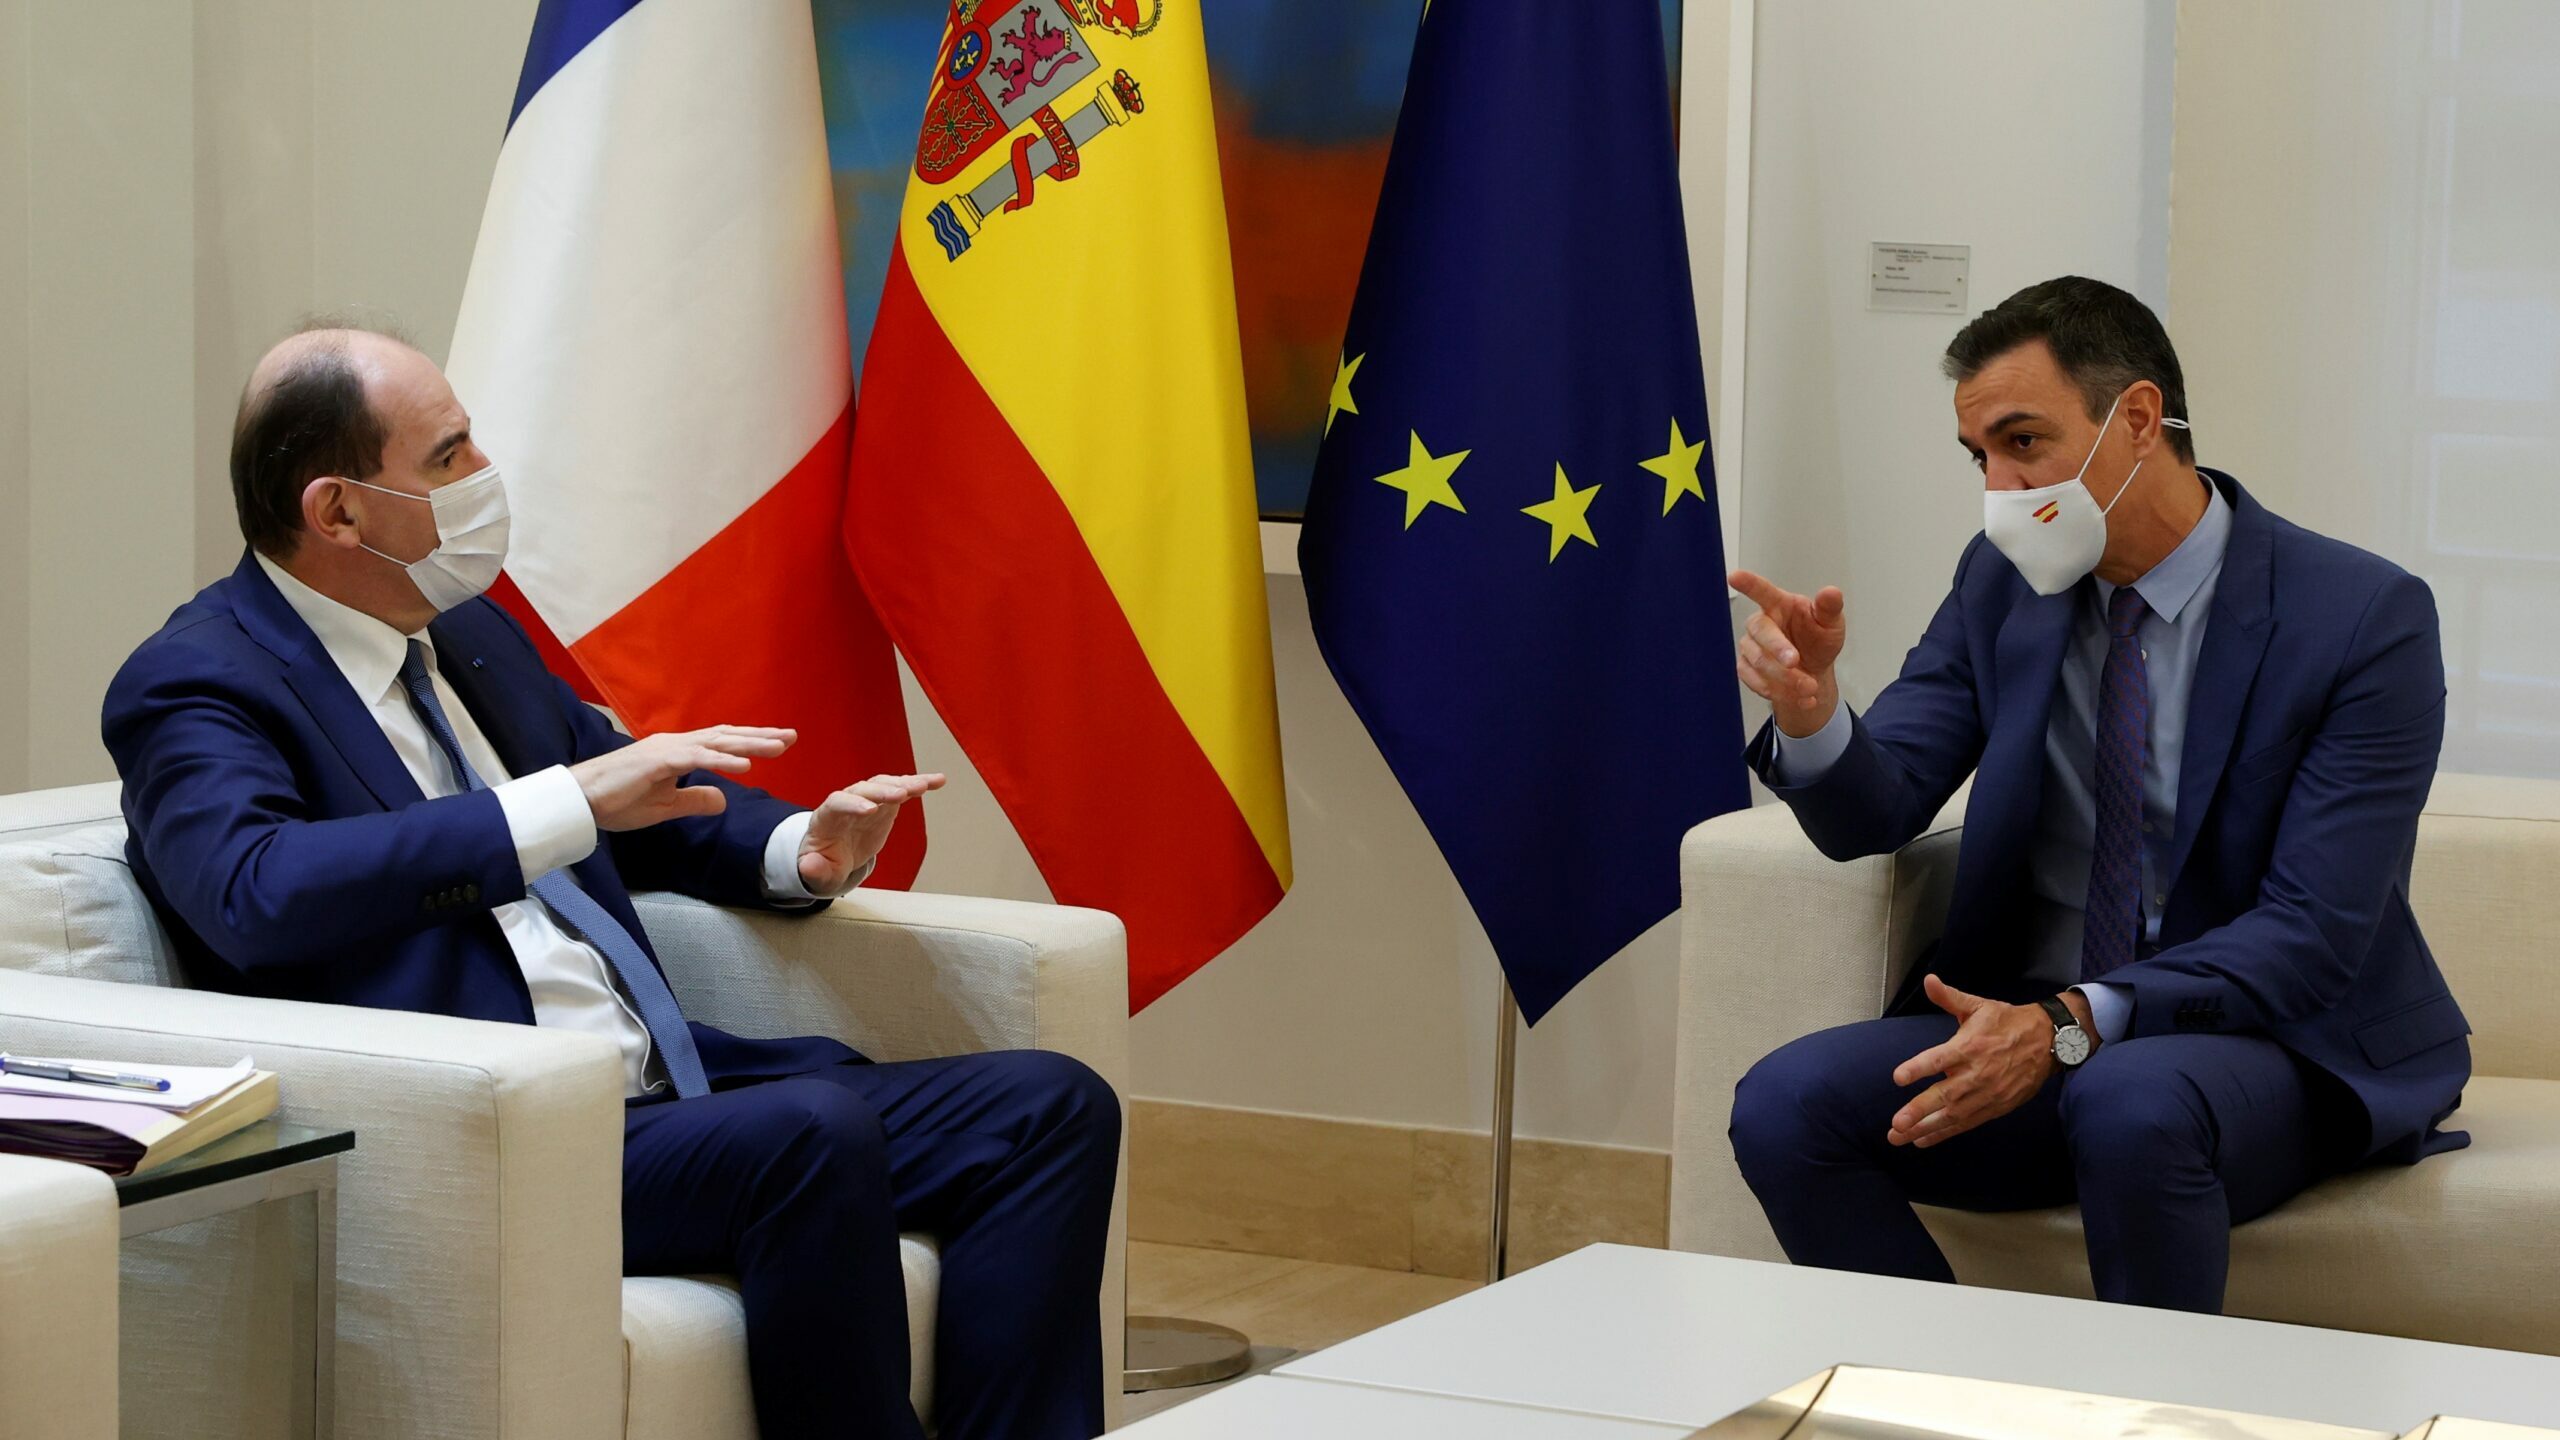 Macron se reúne con el canciller Sholz mientras envía a su segundo a al encuentro con Sánchez